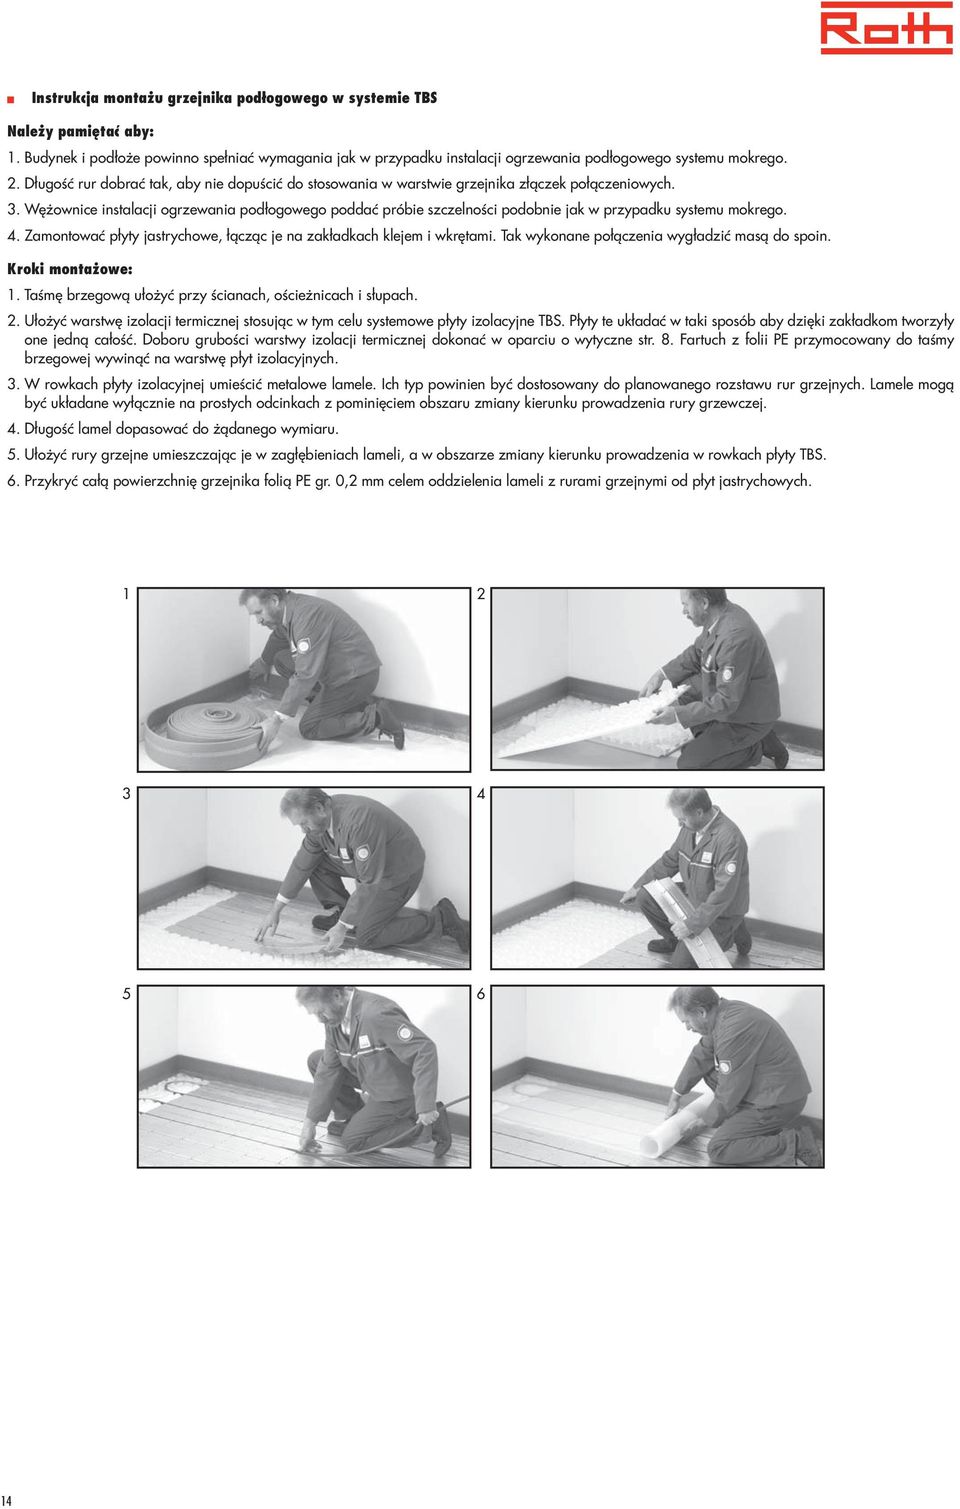 Wężownice instalacji ogrzewania podłogowego poddać próbie szczelności podobnie jak w przypadku systemu mokrego. 4. Zamontować płyty jastrychowe, łącząc je na zakładkach klejem i wkrętami.